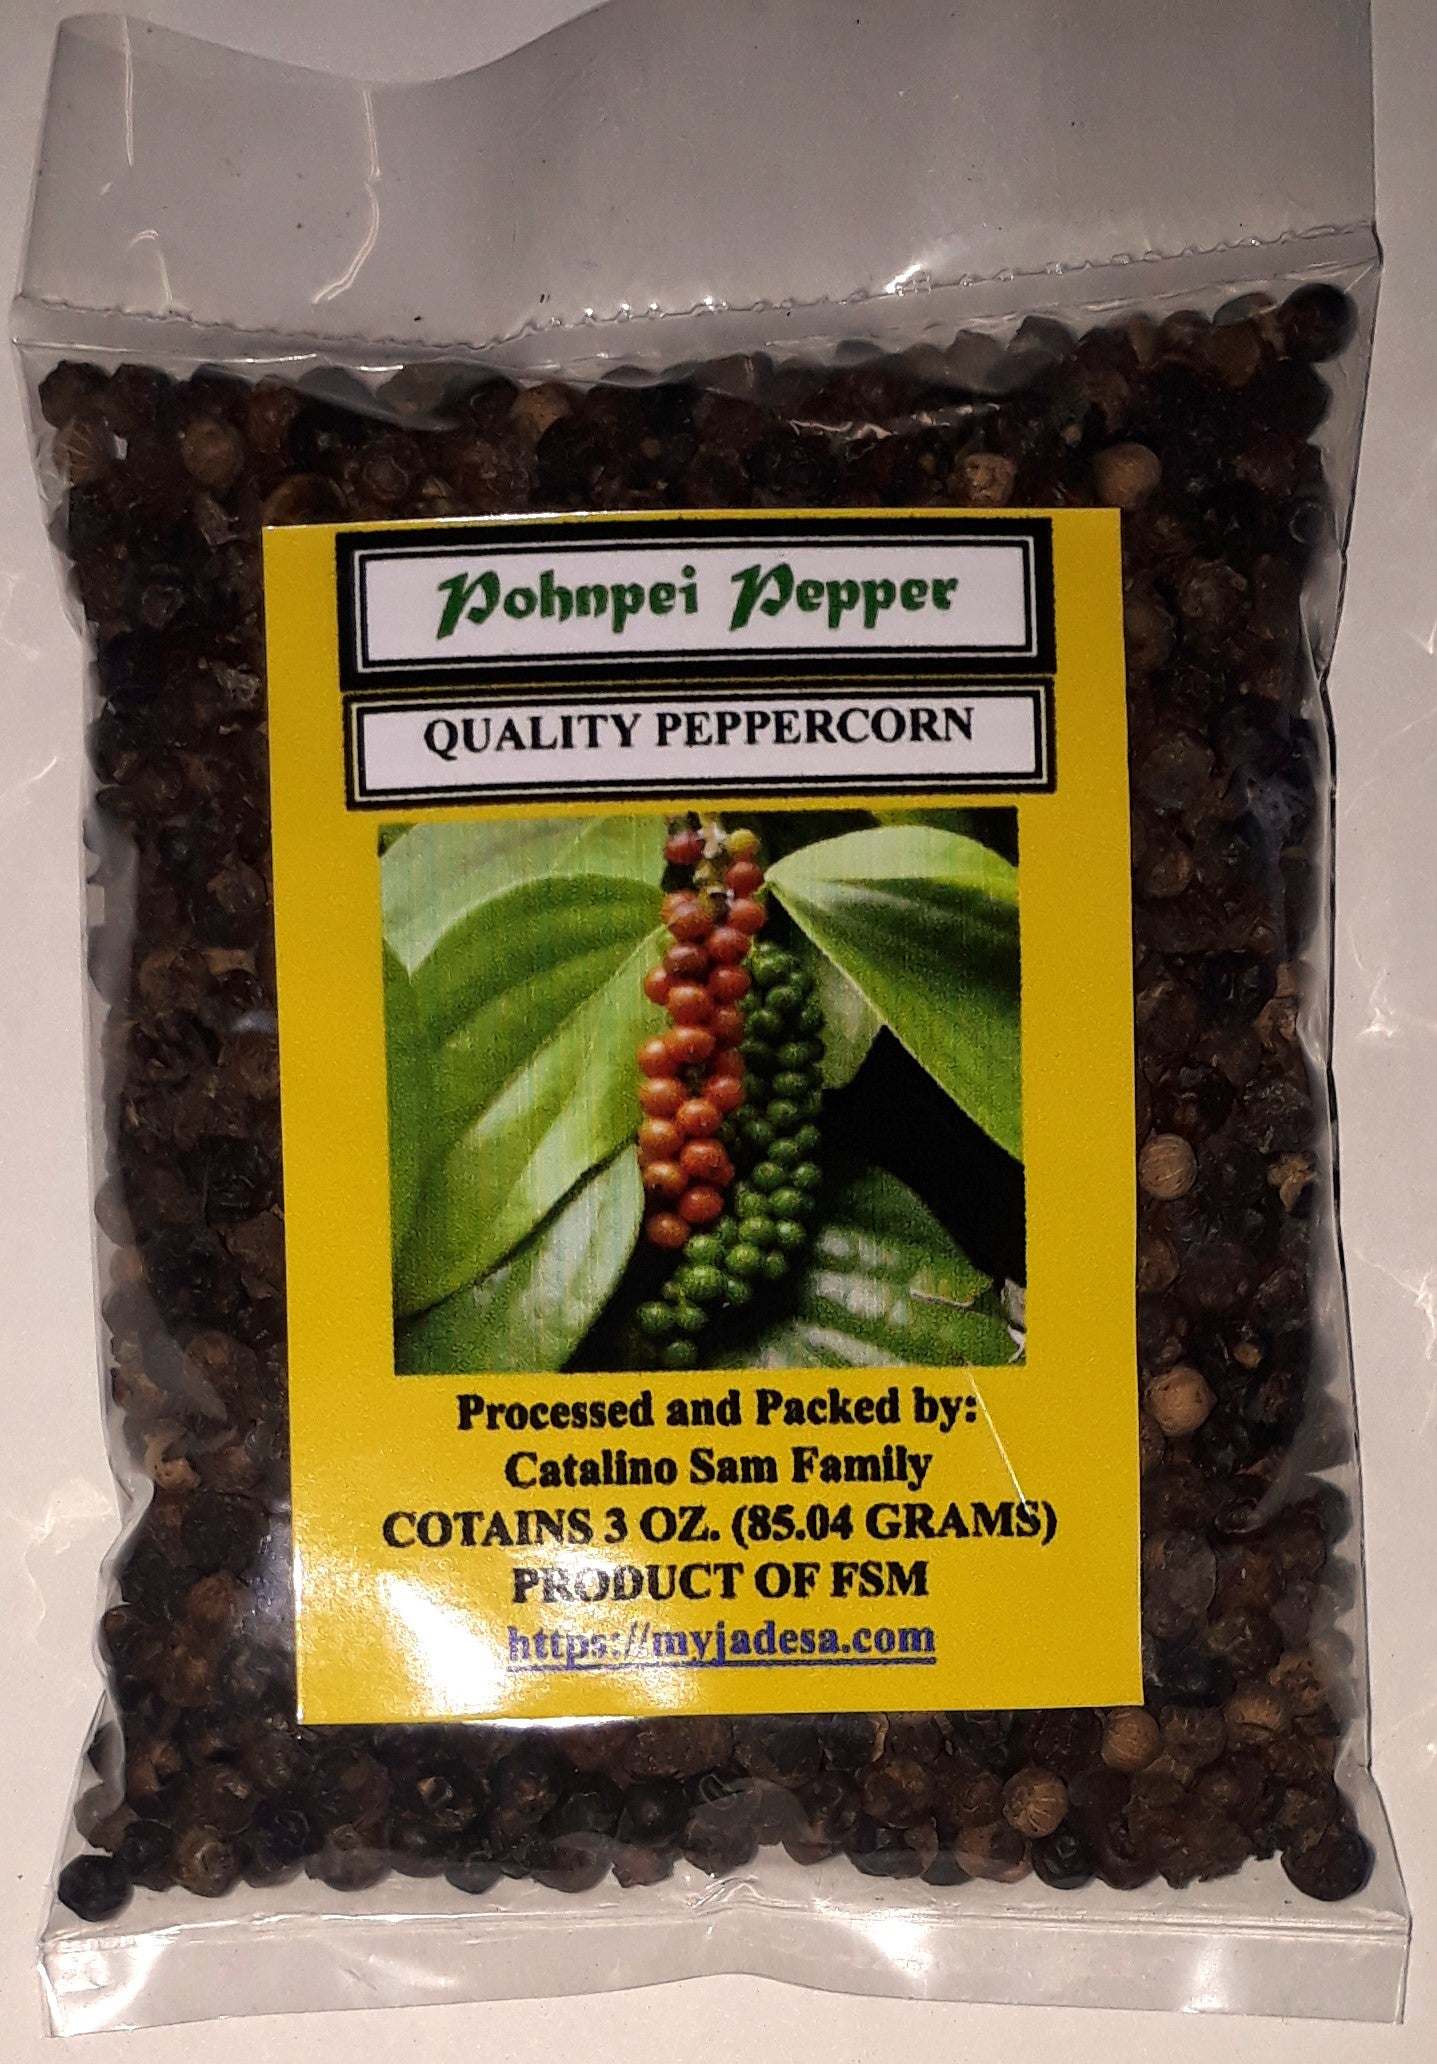 Pohnpei Black Pepper